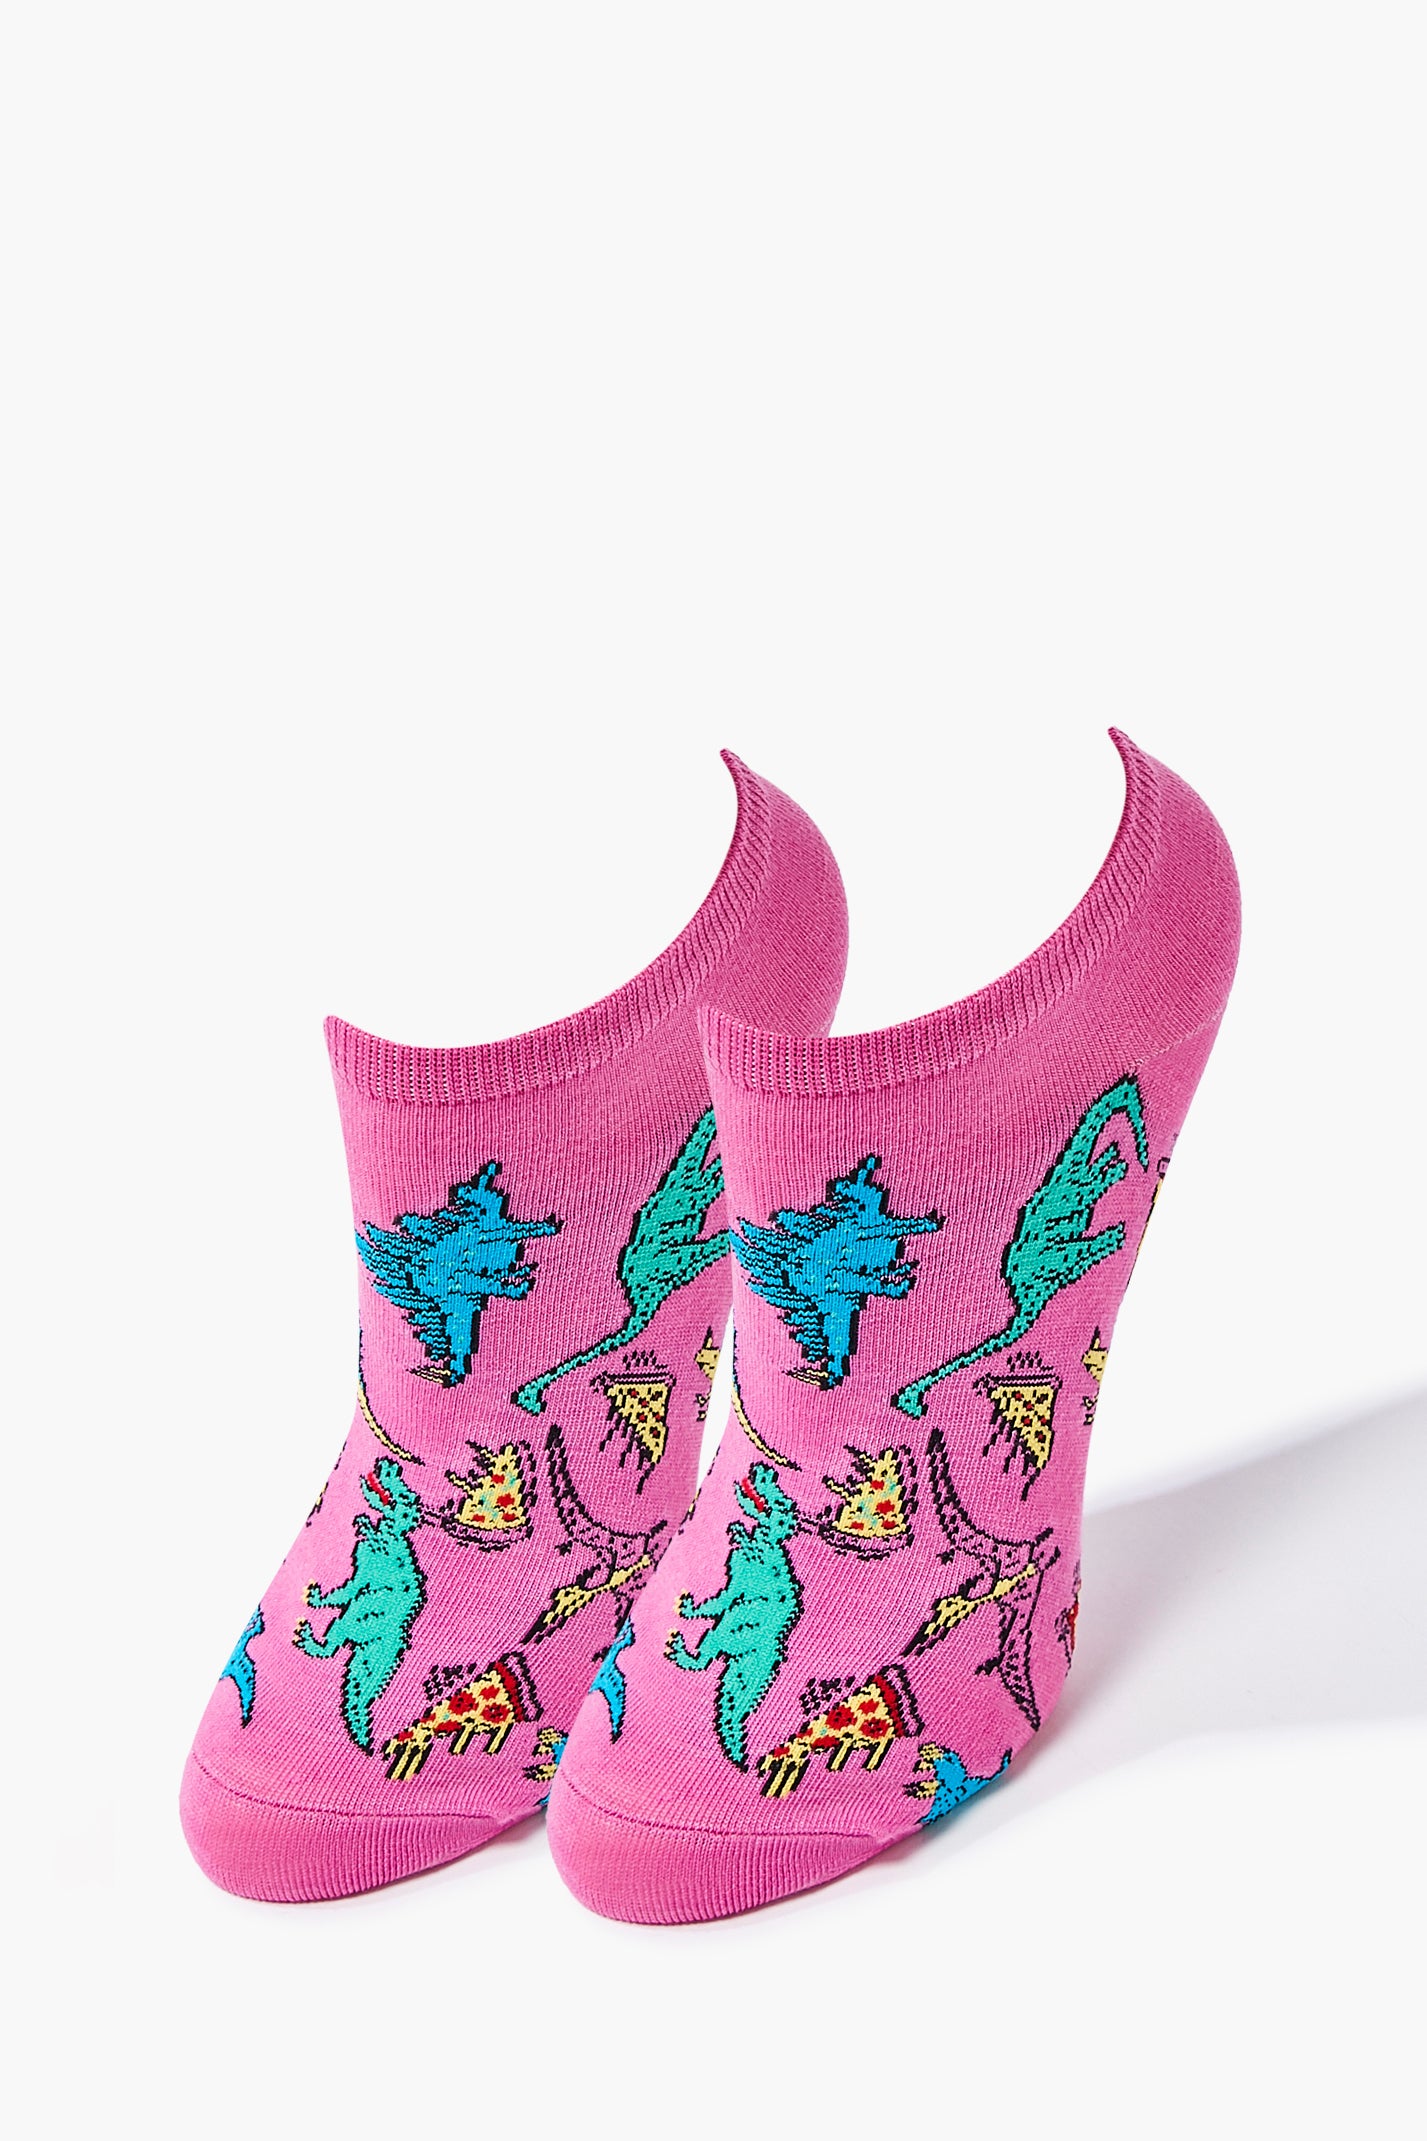 Purplemulti Dinosaur Ankle Socks